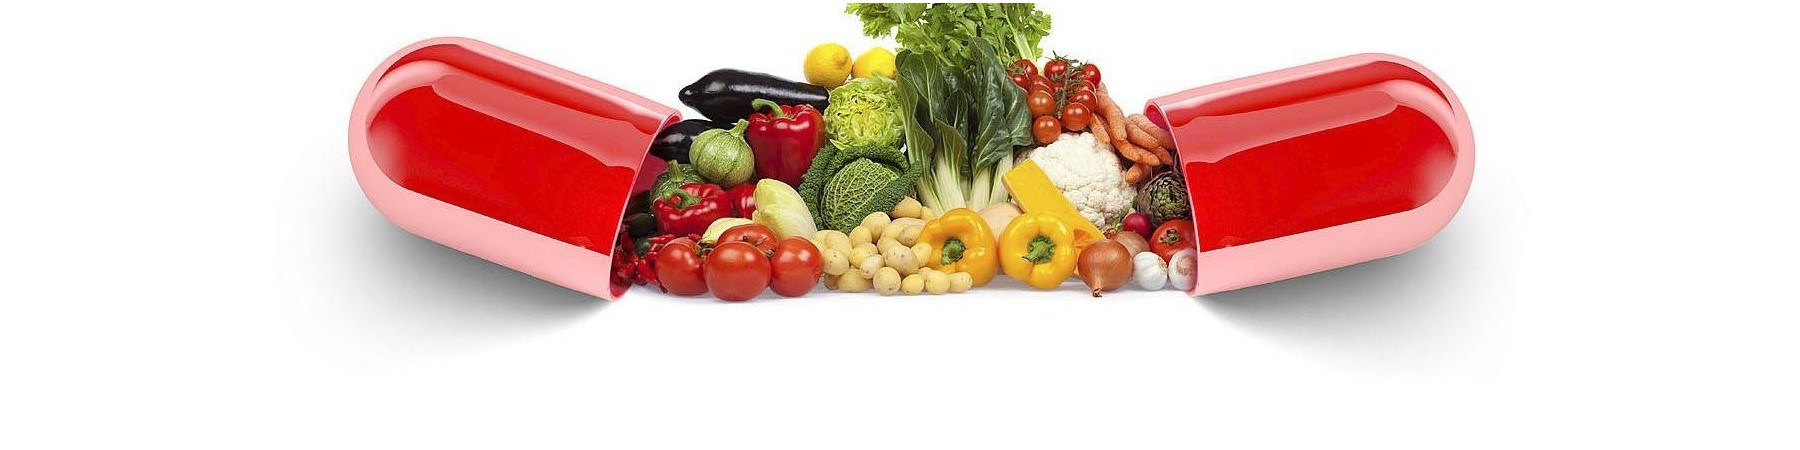 Thực phẩm chức năng,bổ sung dinh dưỡng,vitamin,khoáng chất an toàn